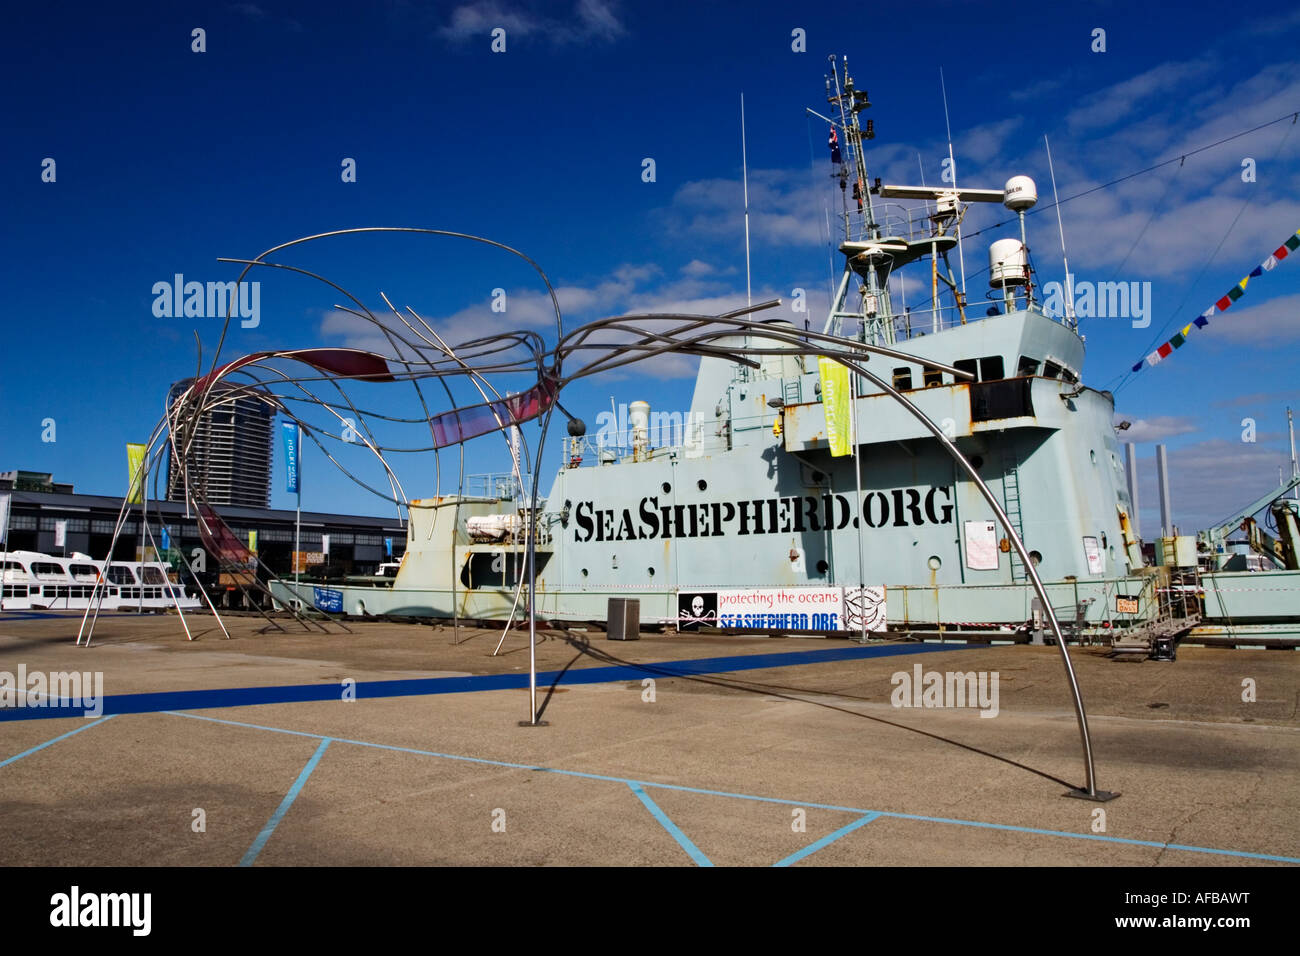 Versand / Schiff. Das Schiff "Robert Hunter" in "Melbourne Docklands" Victoria Australien festgemacht. Stockfoto